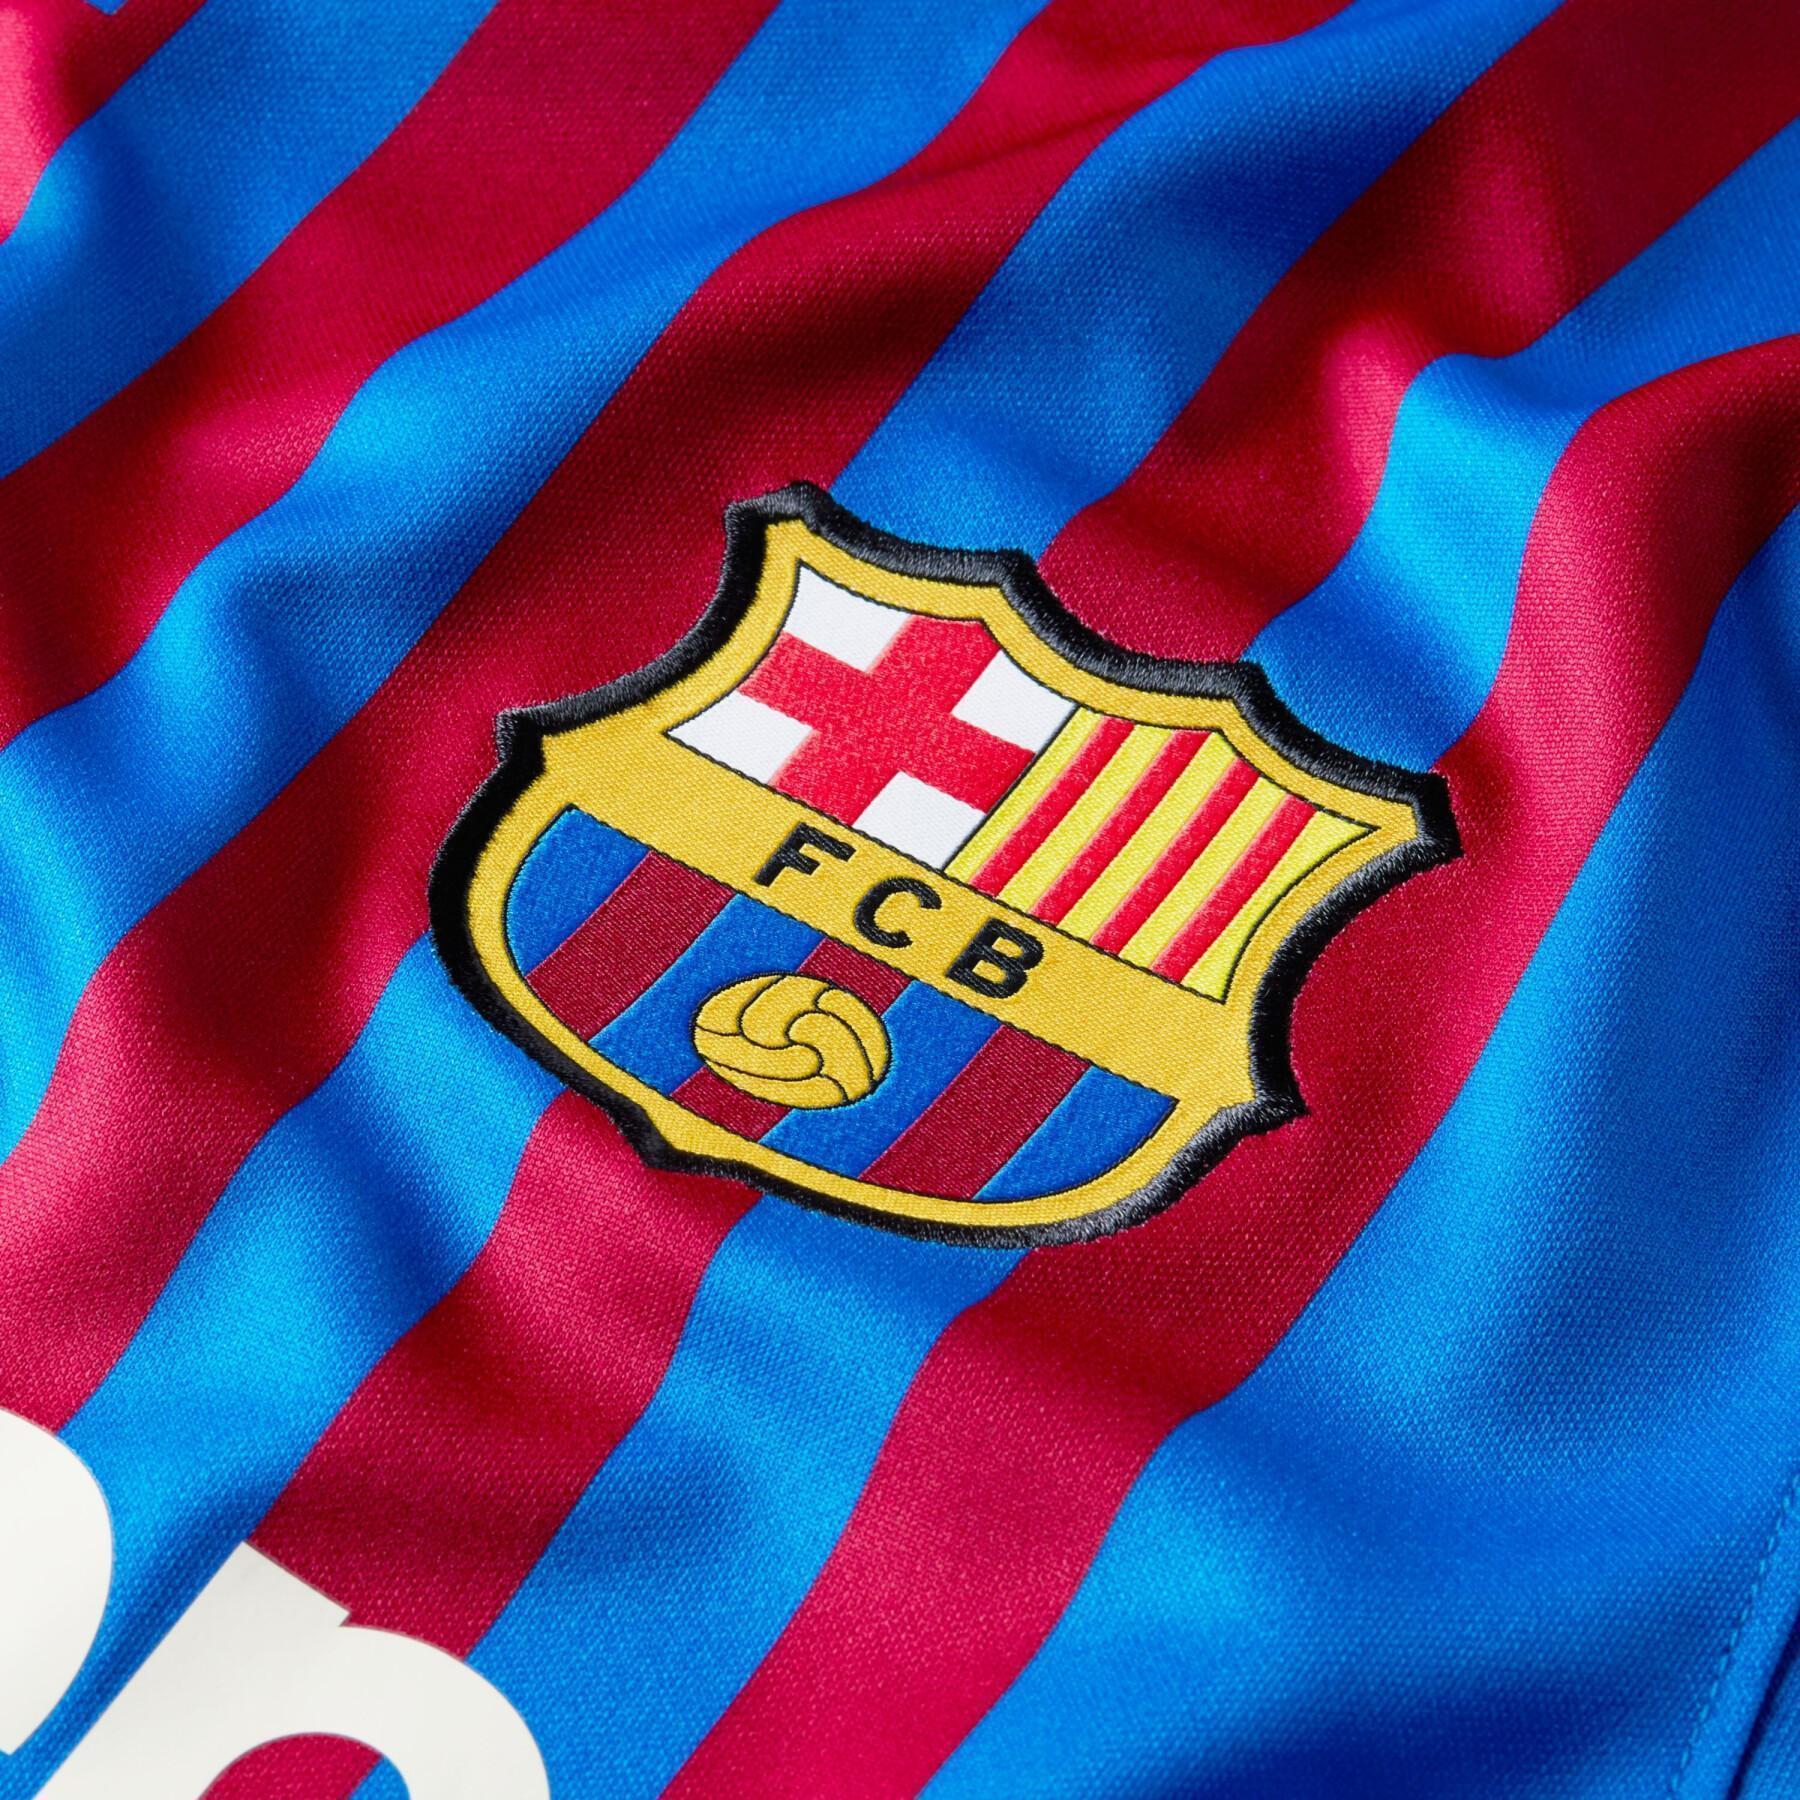 Hemma tröja FC Barcelone 2021/22